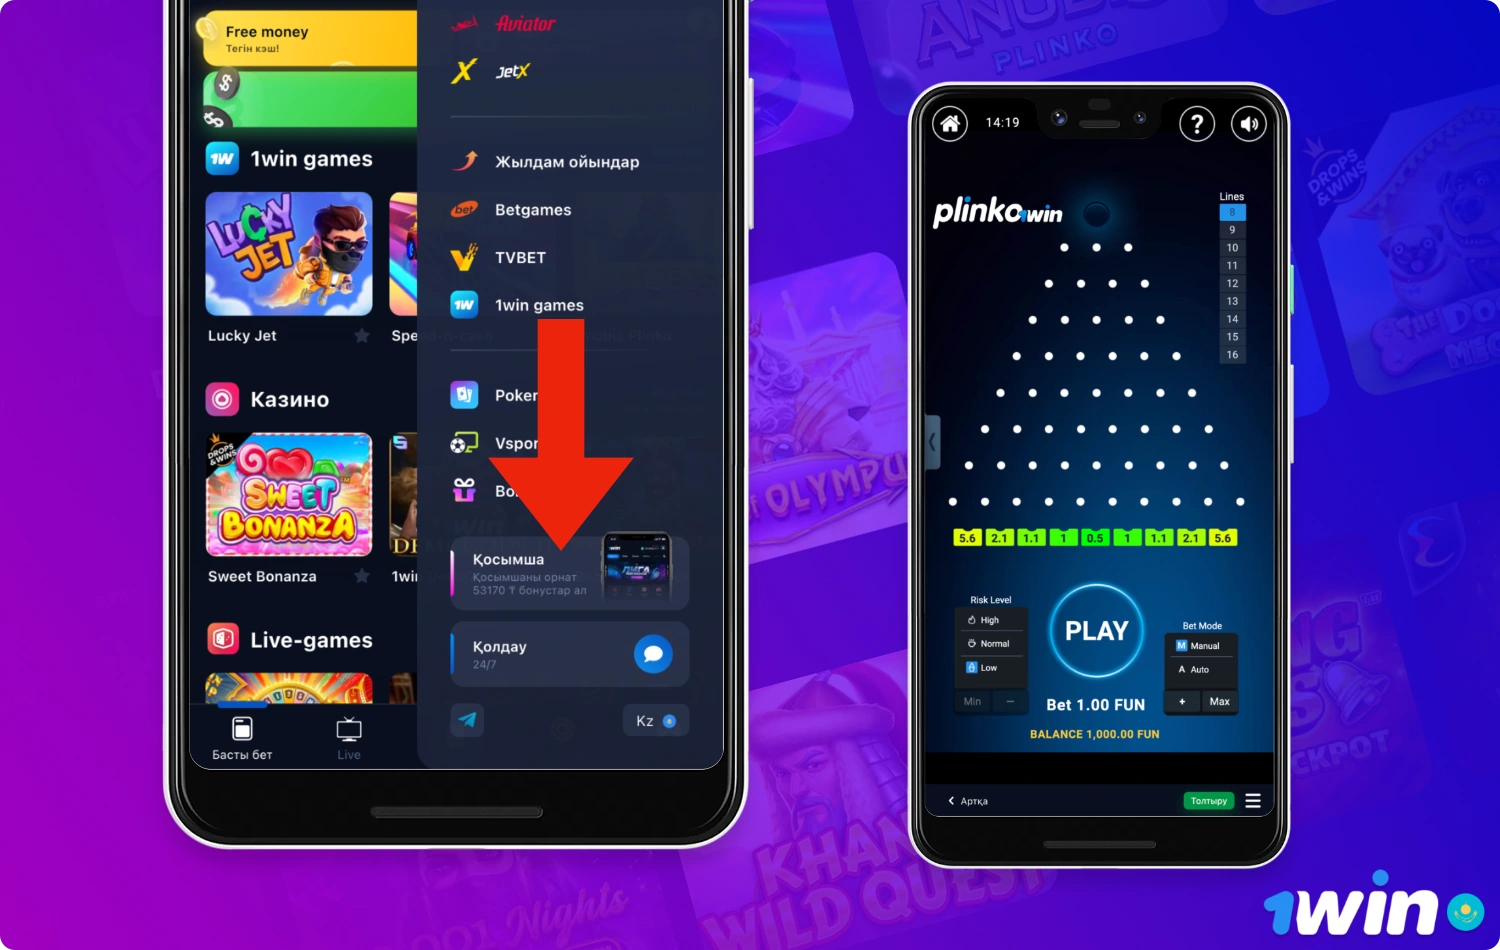 Чтобы играть в Plinko на смартфоне или планшете, пользователю необходимо скачать приложение 1win для Android или iOS